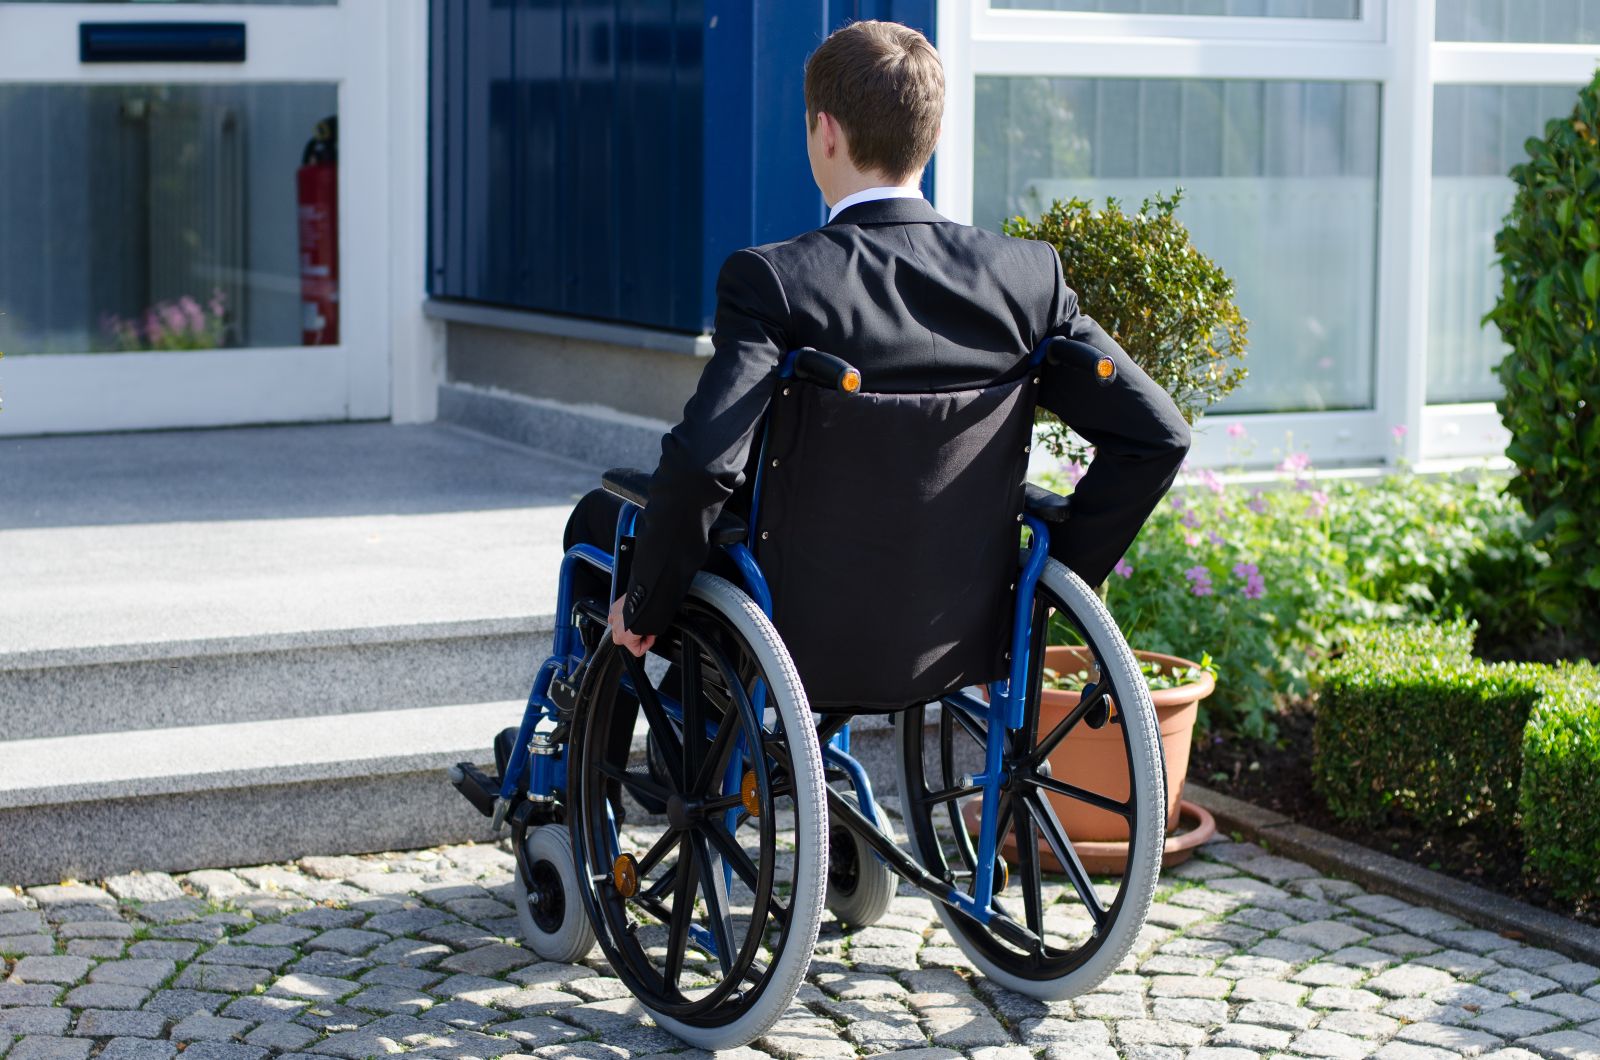 Les quotas de mise en accessibilité handicapé inquiètent fortement les associations 